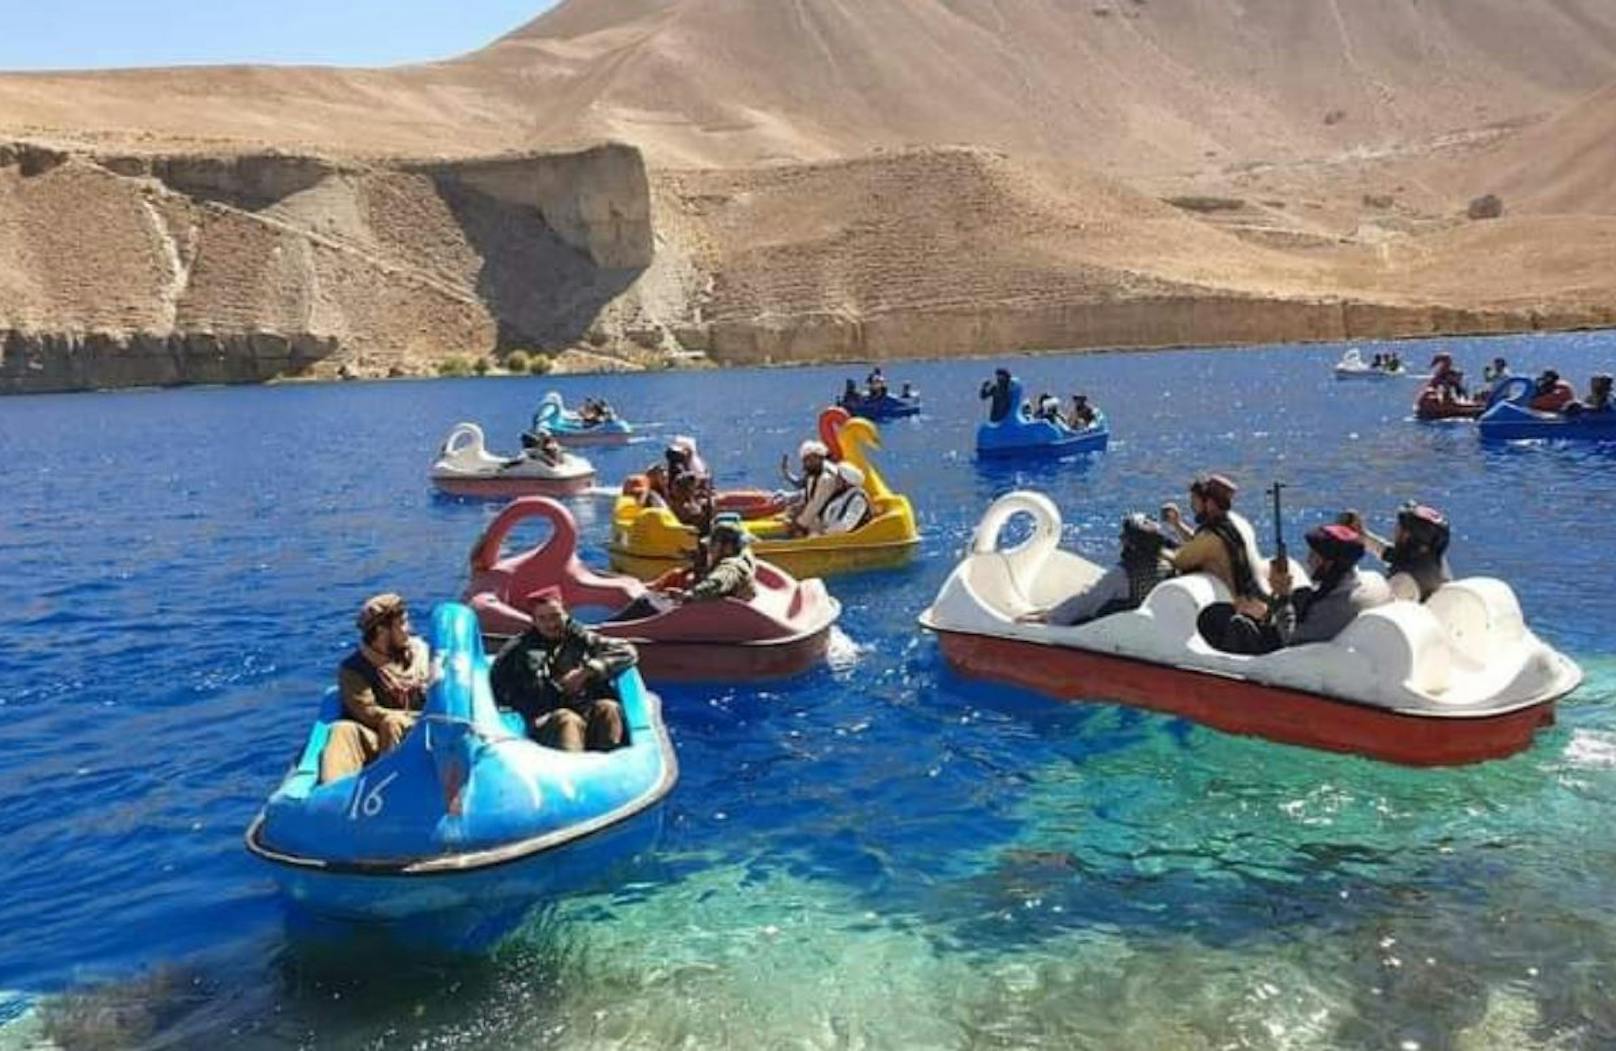 Seit Samstag kursieren im Internet Videos von Taliban, wie sie sich in einem Nationalpark auf Tretbooten vergnügen.